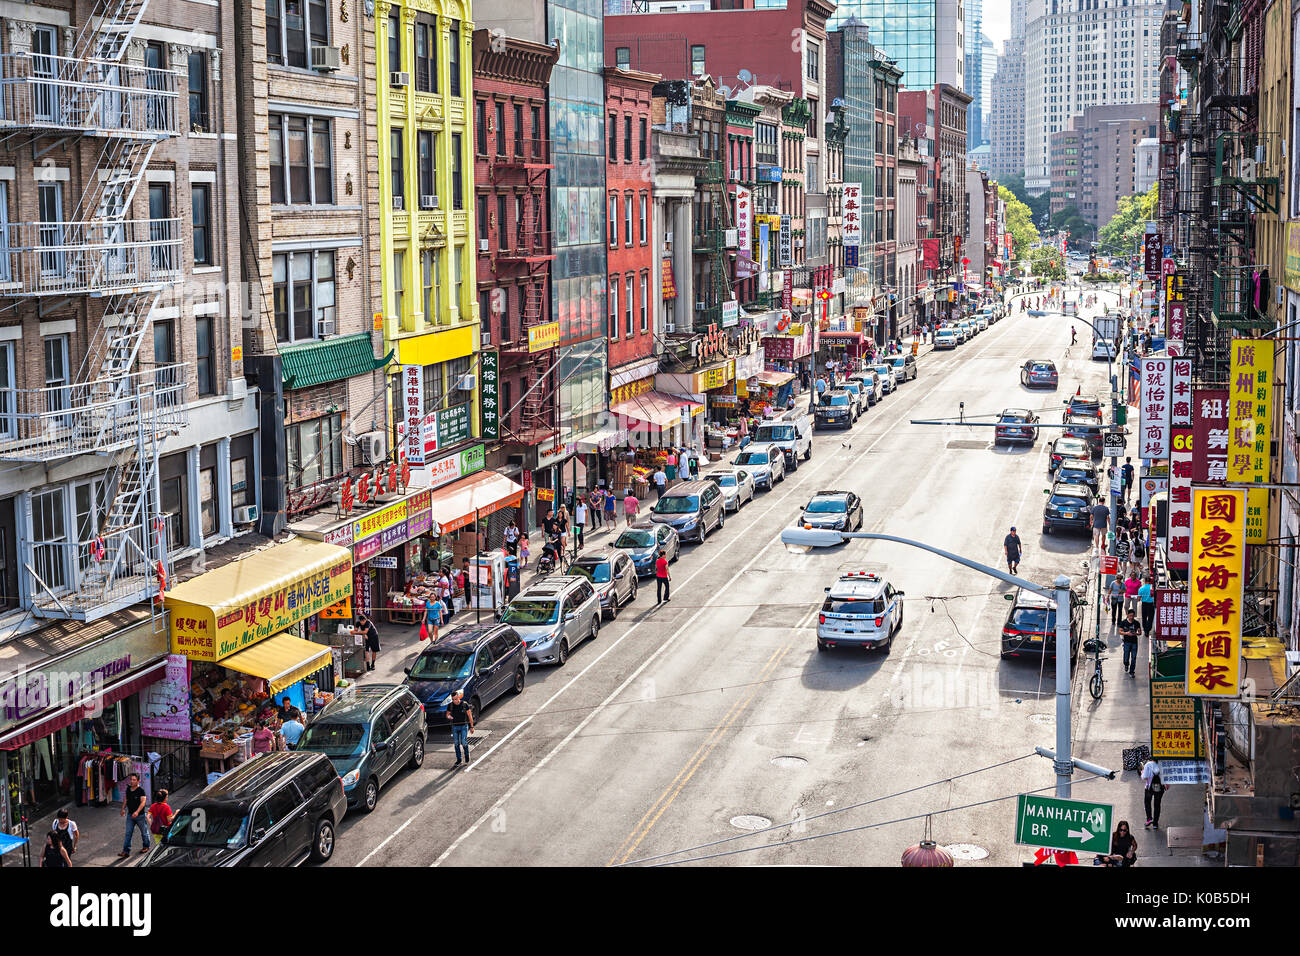 Chinatown, Manhattan, New York City Stock Photo